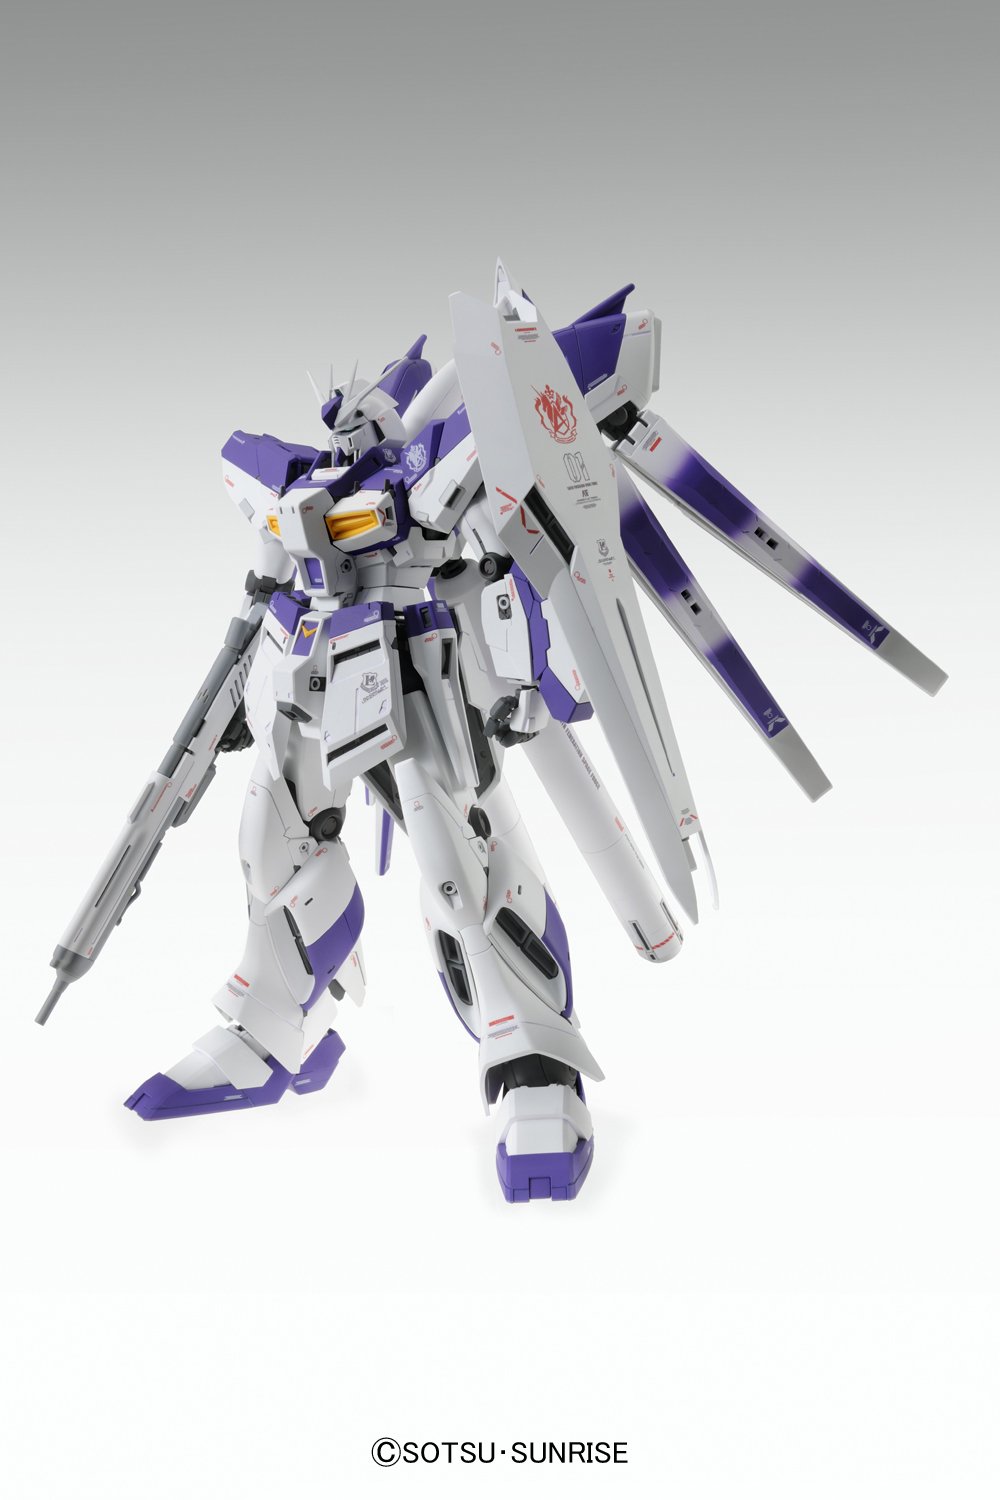 MG 1/100 RX-93-ν2 Hi-νガンダム Ver.Ka [Hi-ν Gundam “Ver.Ka”] 0185135 4543112851352 5061591 4573102615916